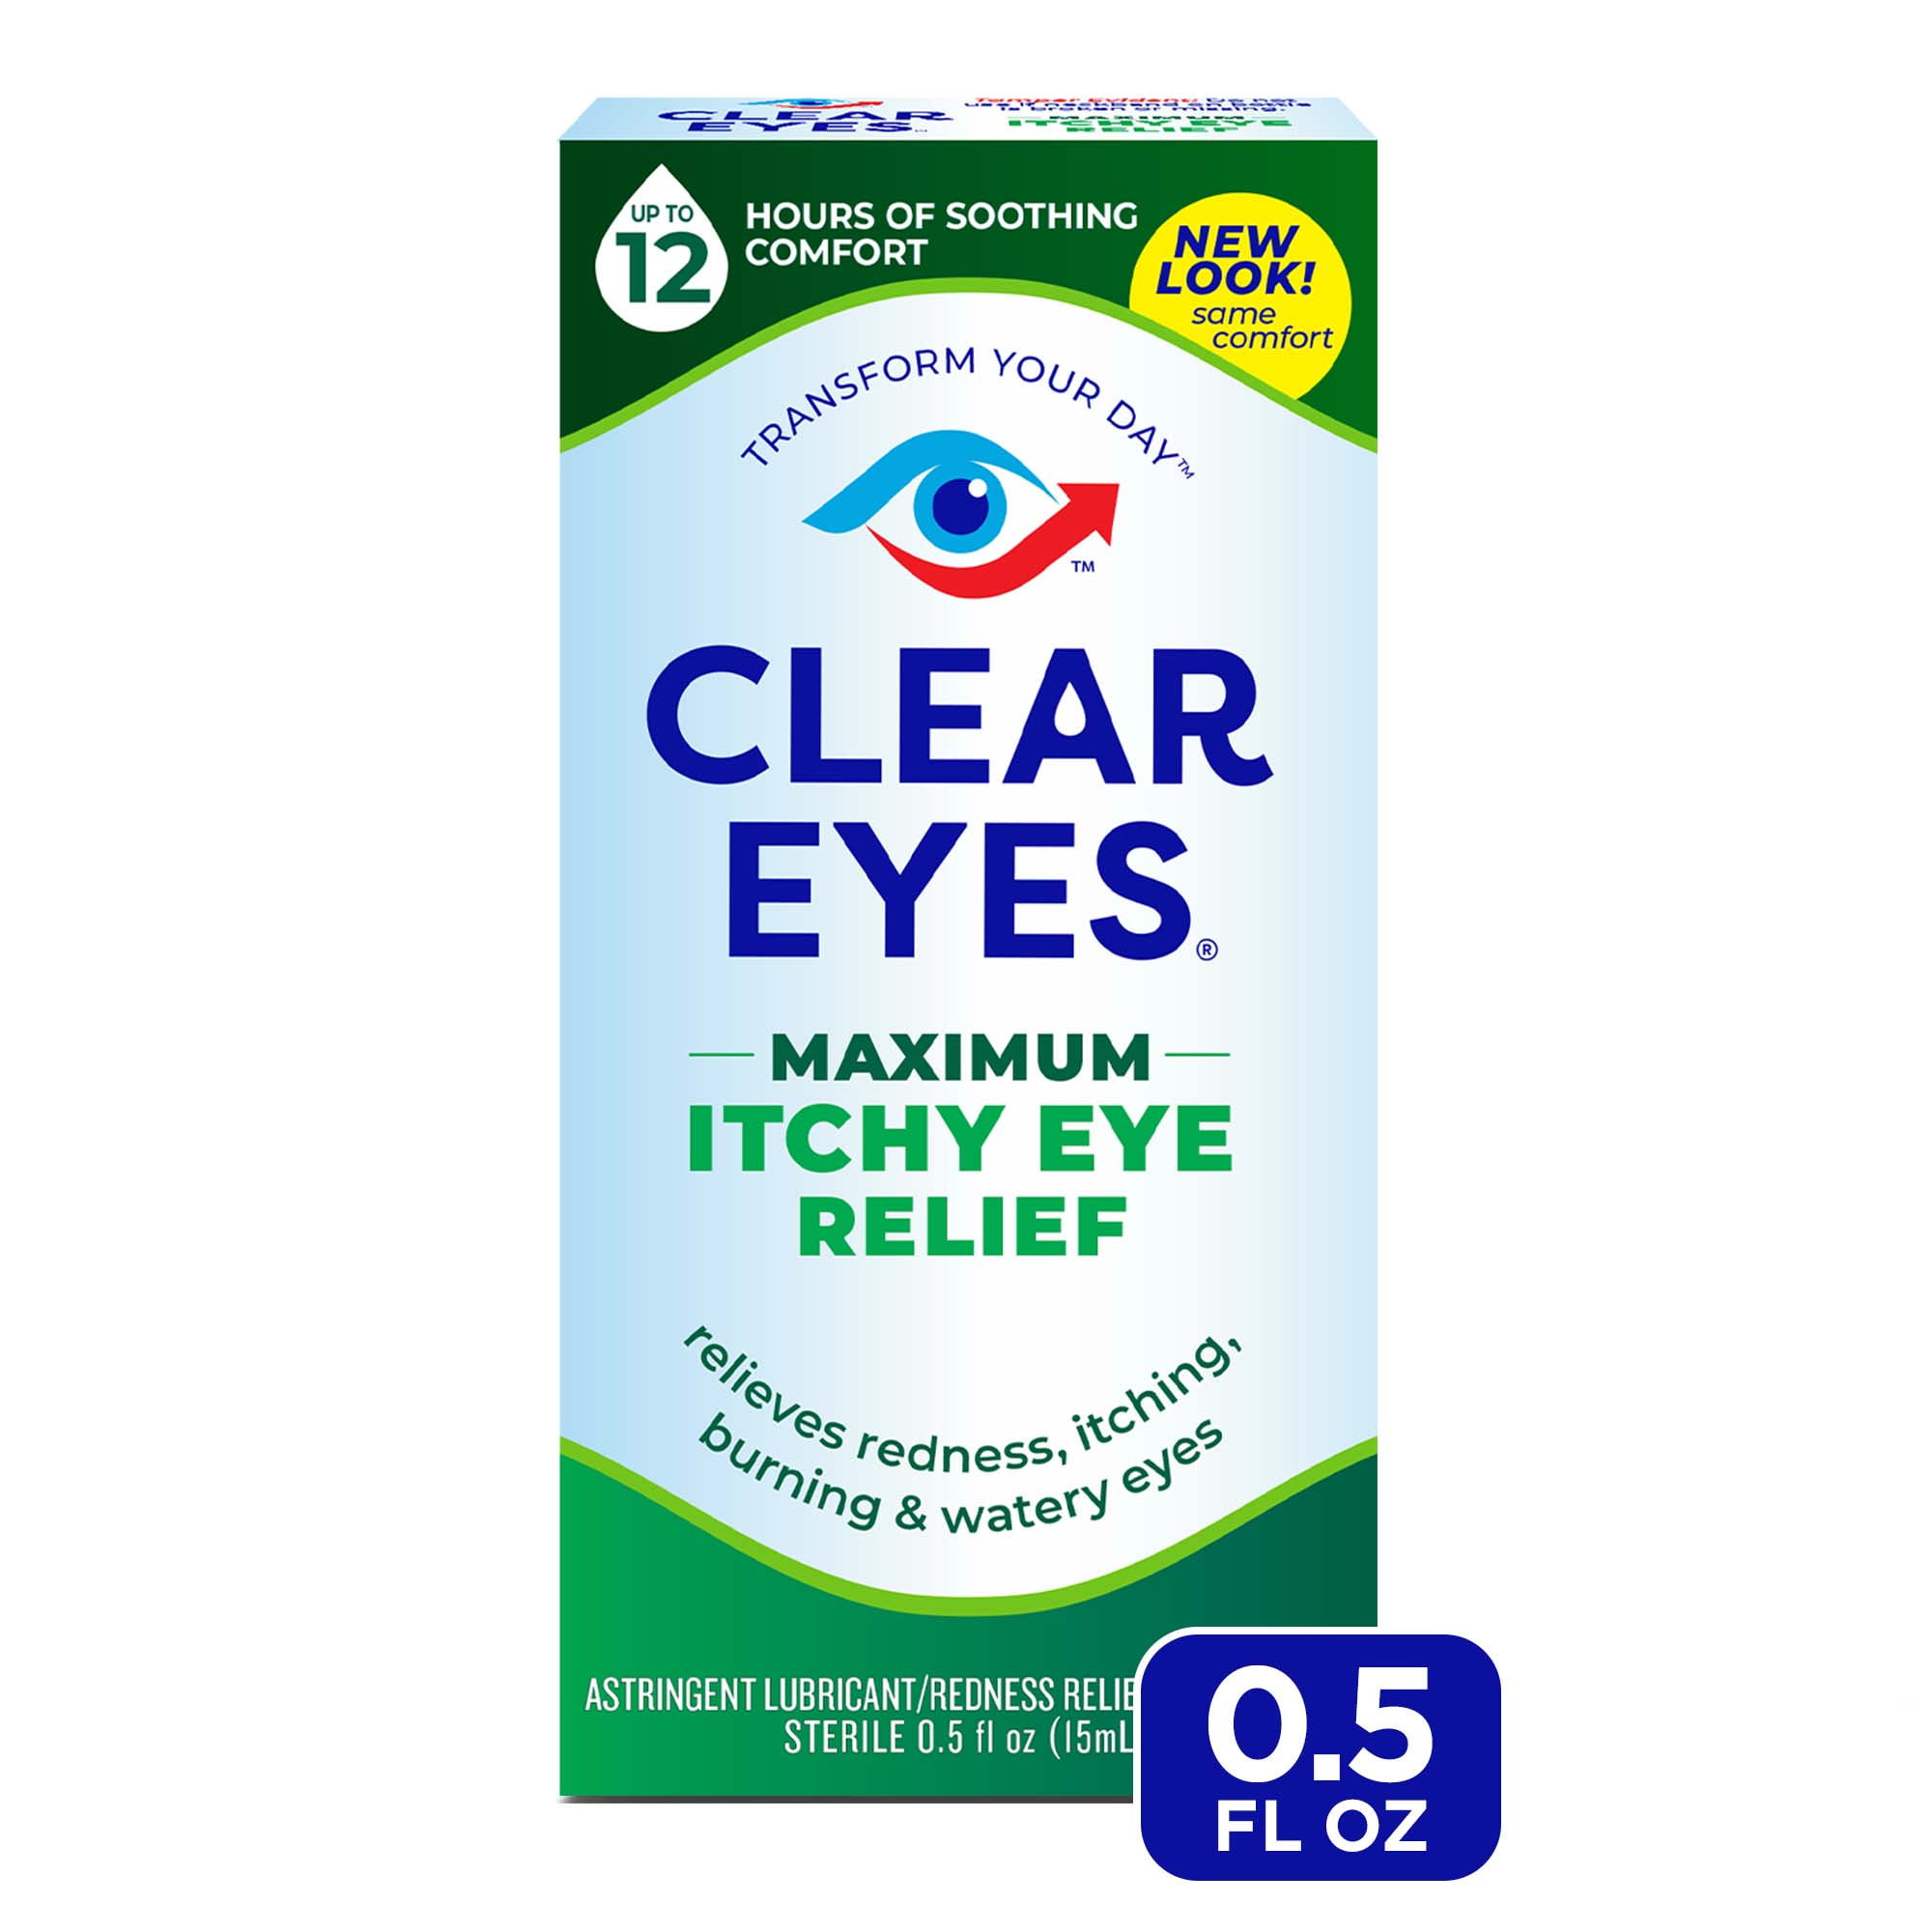 Clear Eyes Maximum Itchy Eye Relief Lubricant Eye Drops, 0.5 fl oz